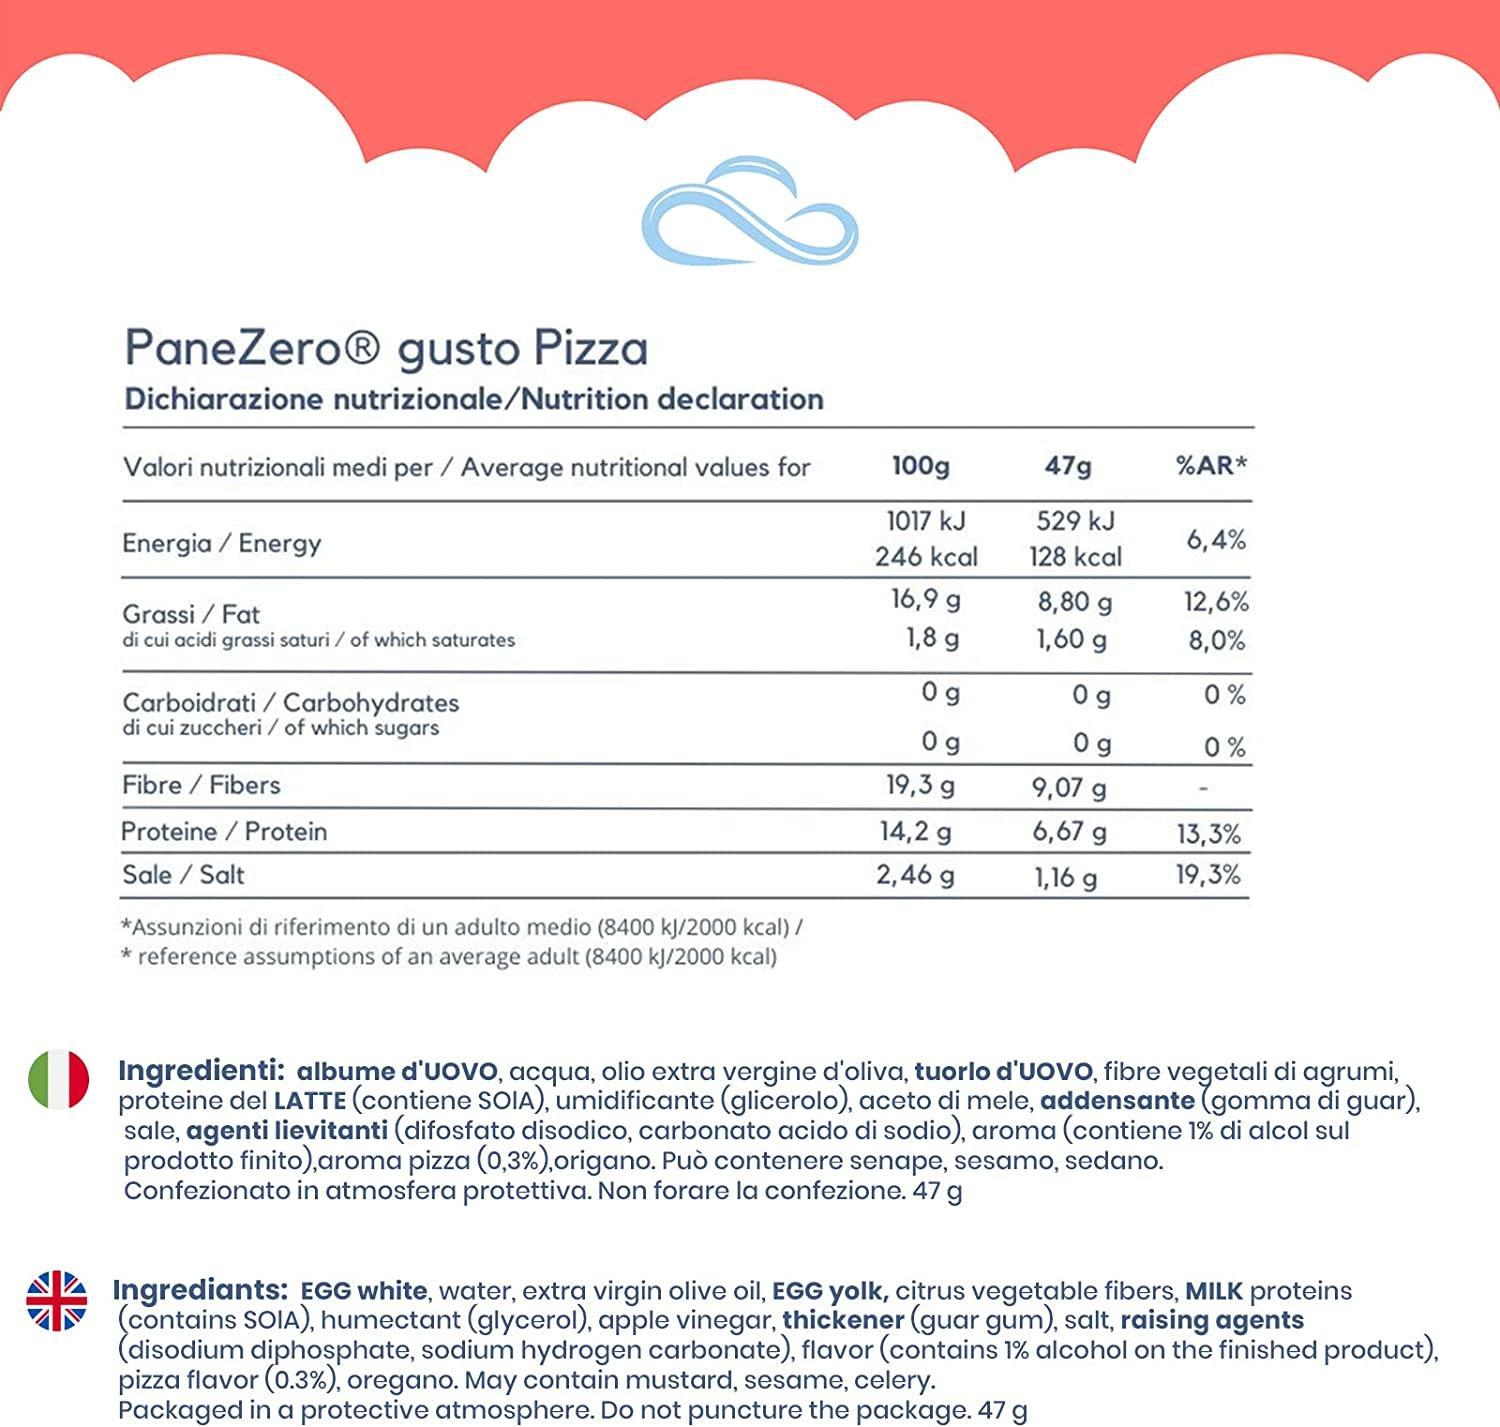 nuvola zero pane zero gusto pizza - 47g